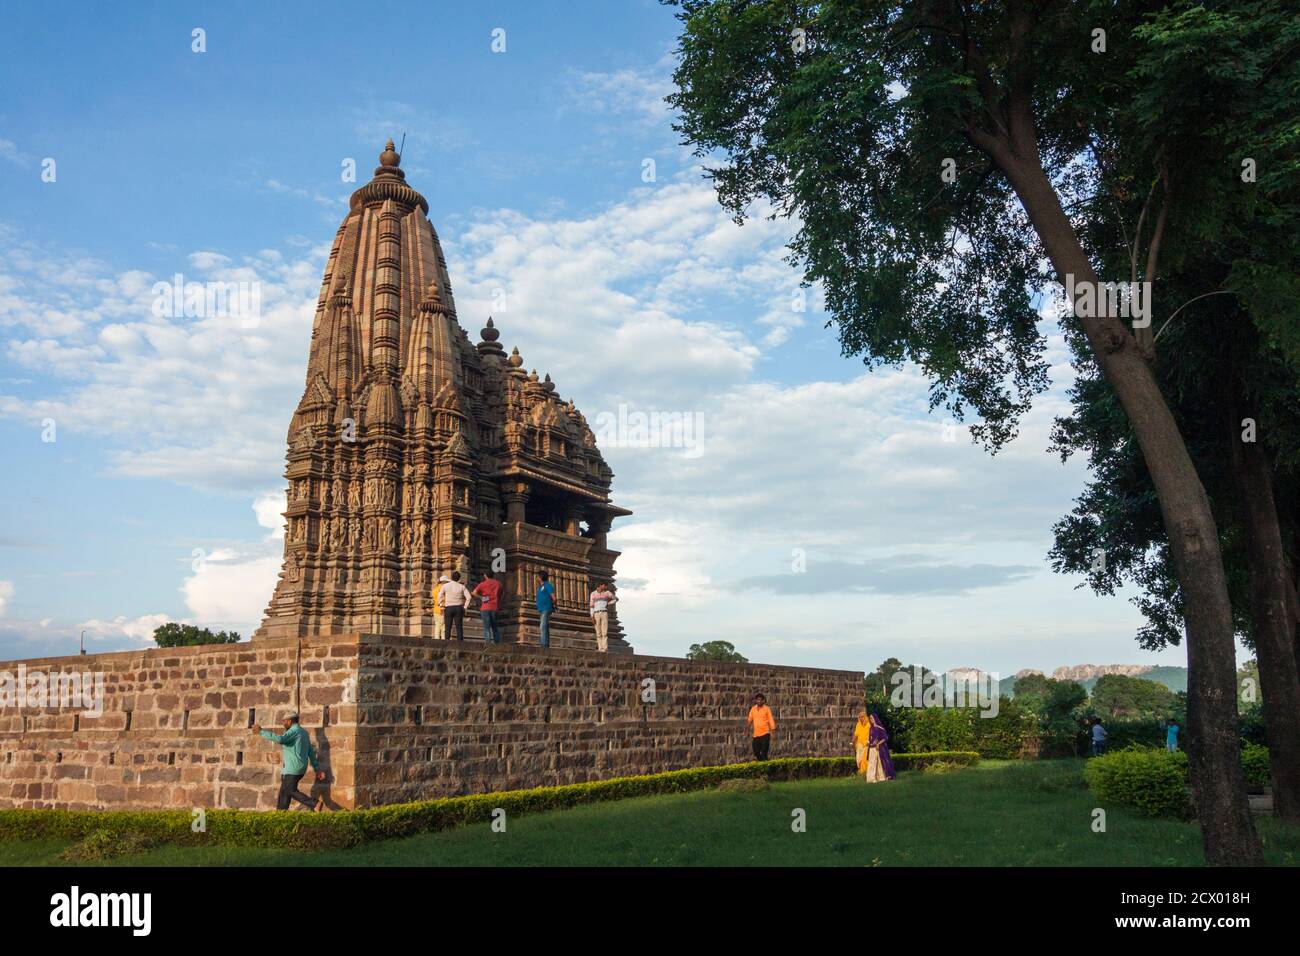 Khajuraho, Madhya Pradesh, Indien : Javari Tempel, Teil der östlichen Gruppe des UNESCO-Weltkulturerbes Khajuraho Gruppe von Denkmälern. Zufällig Stockfoto